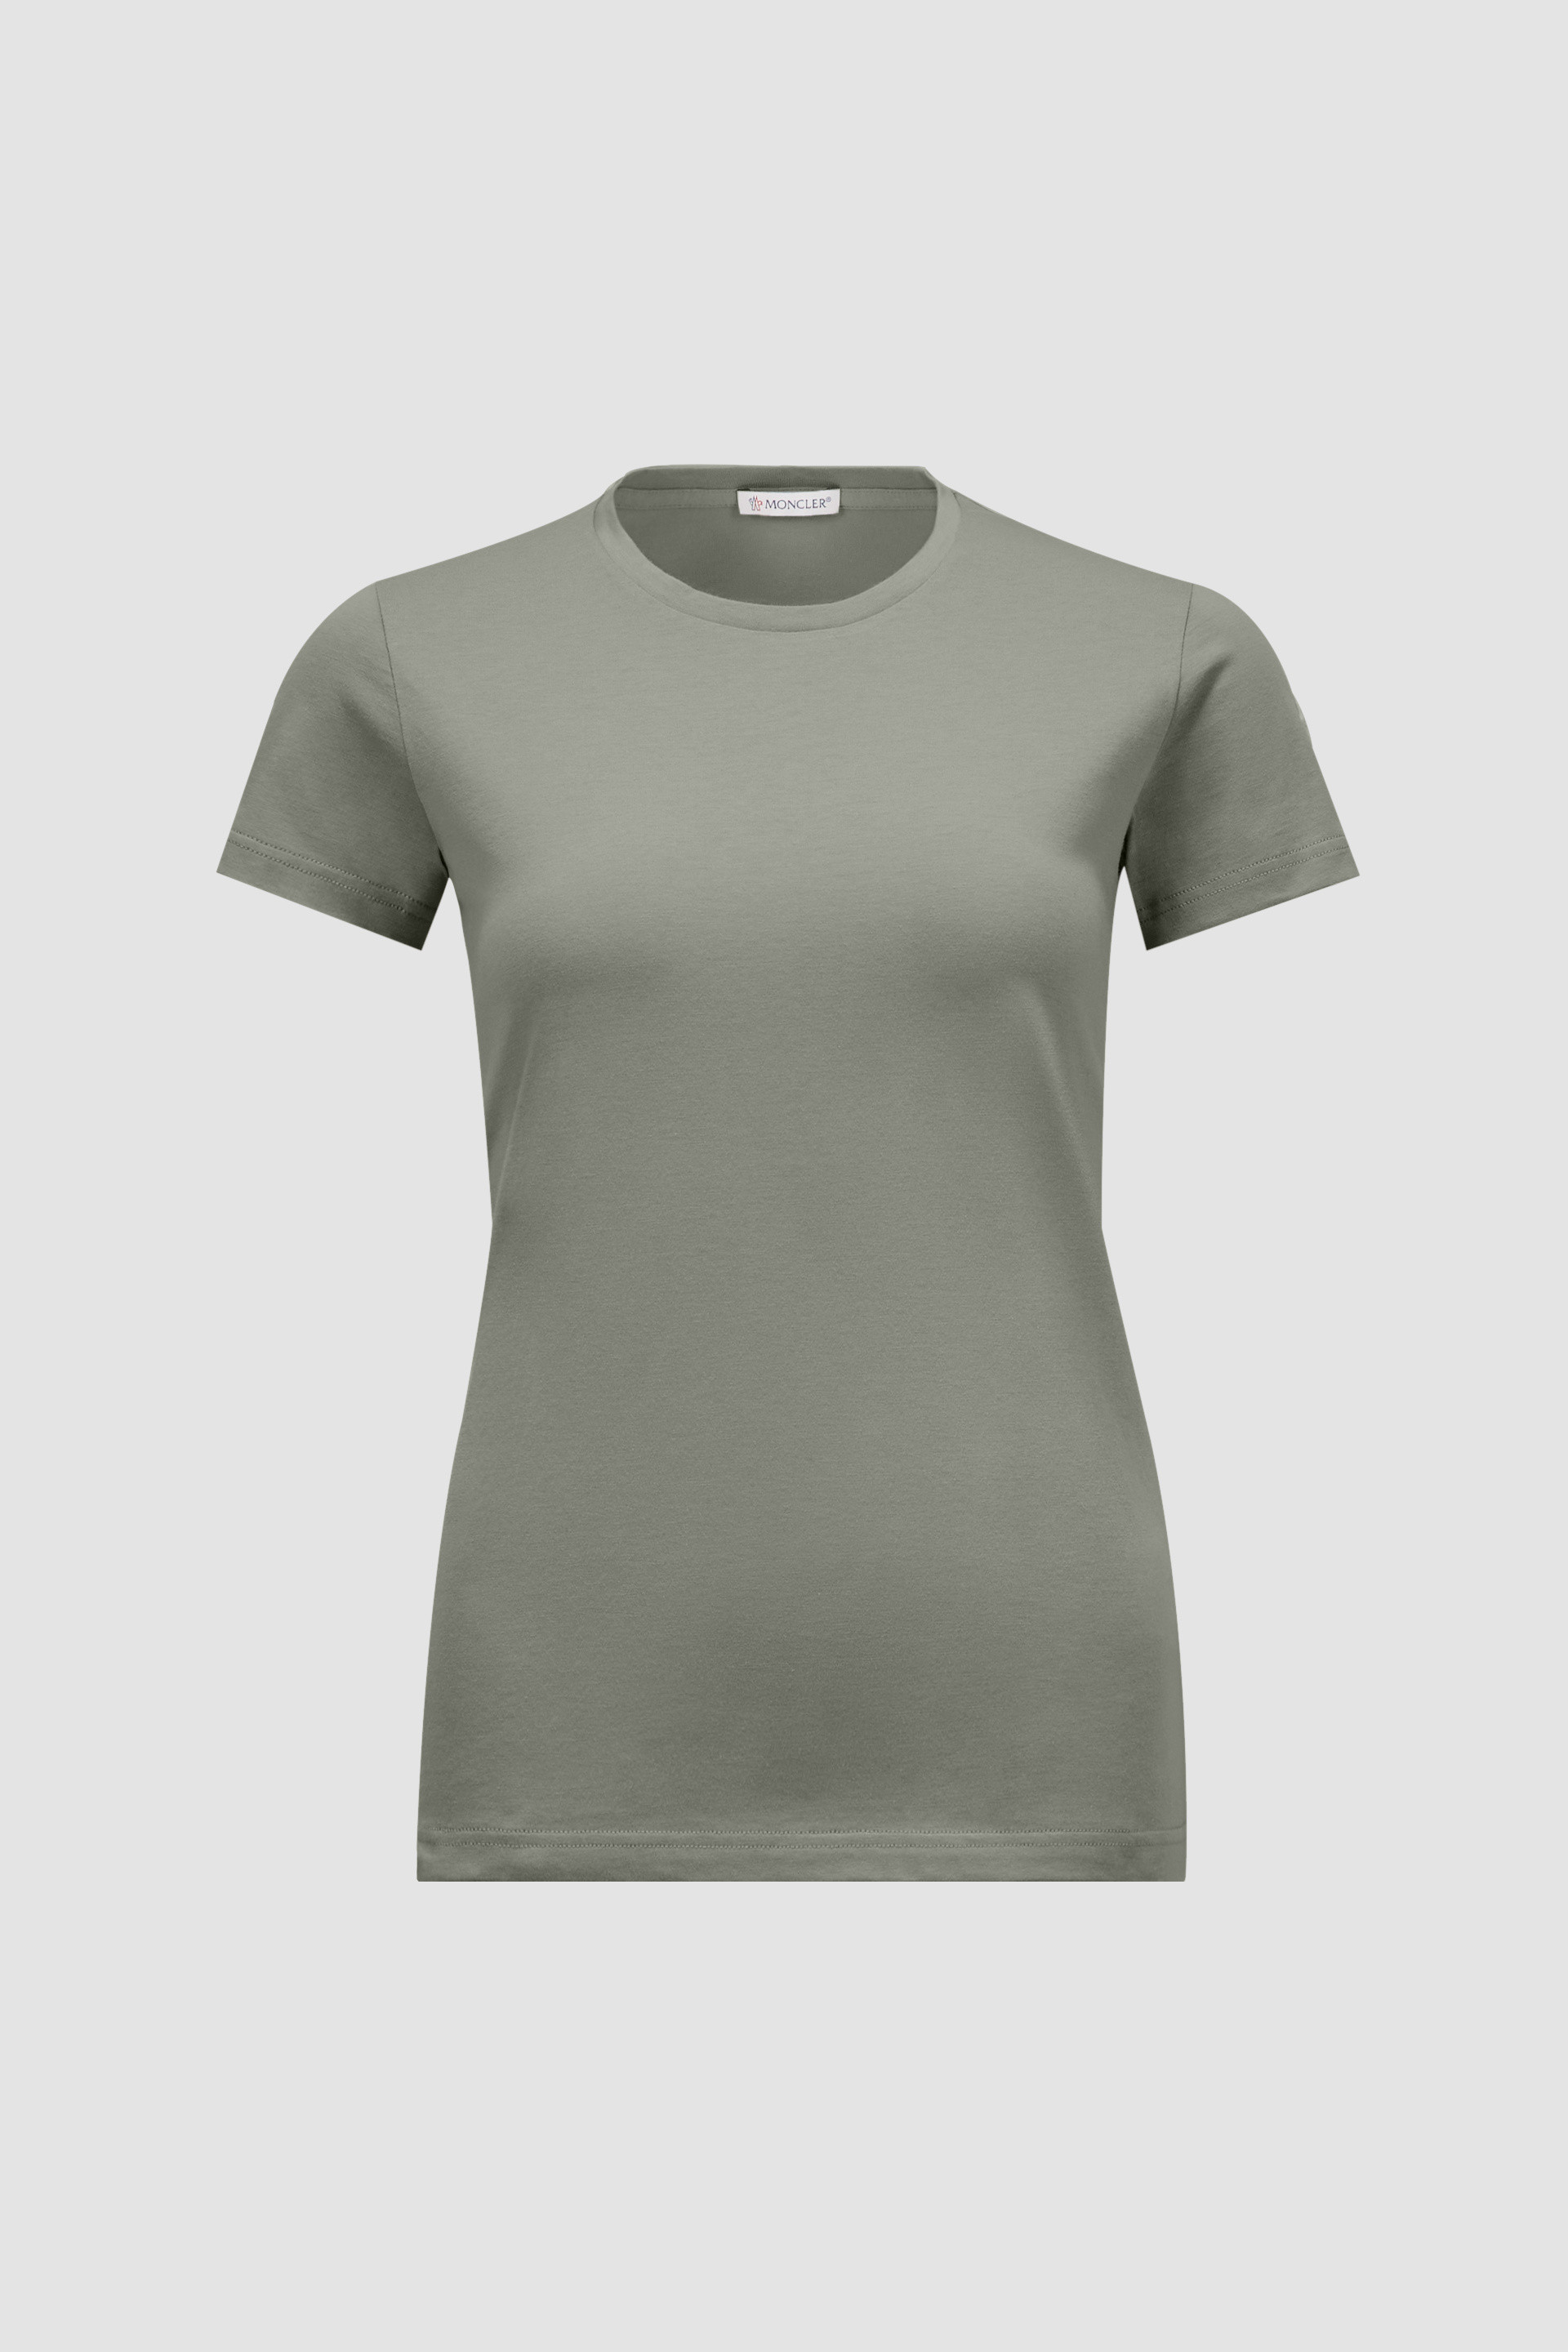 セージグリーン Tシャツ : トップ＆Tシャツ 向けの レディース 